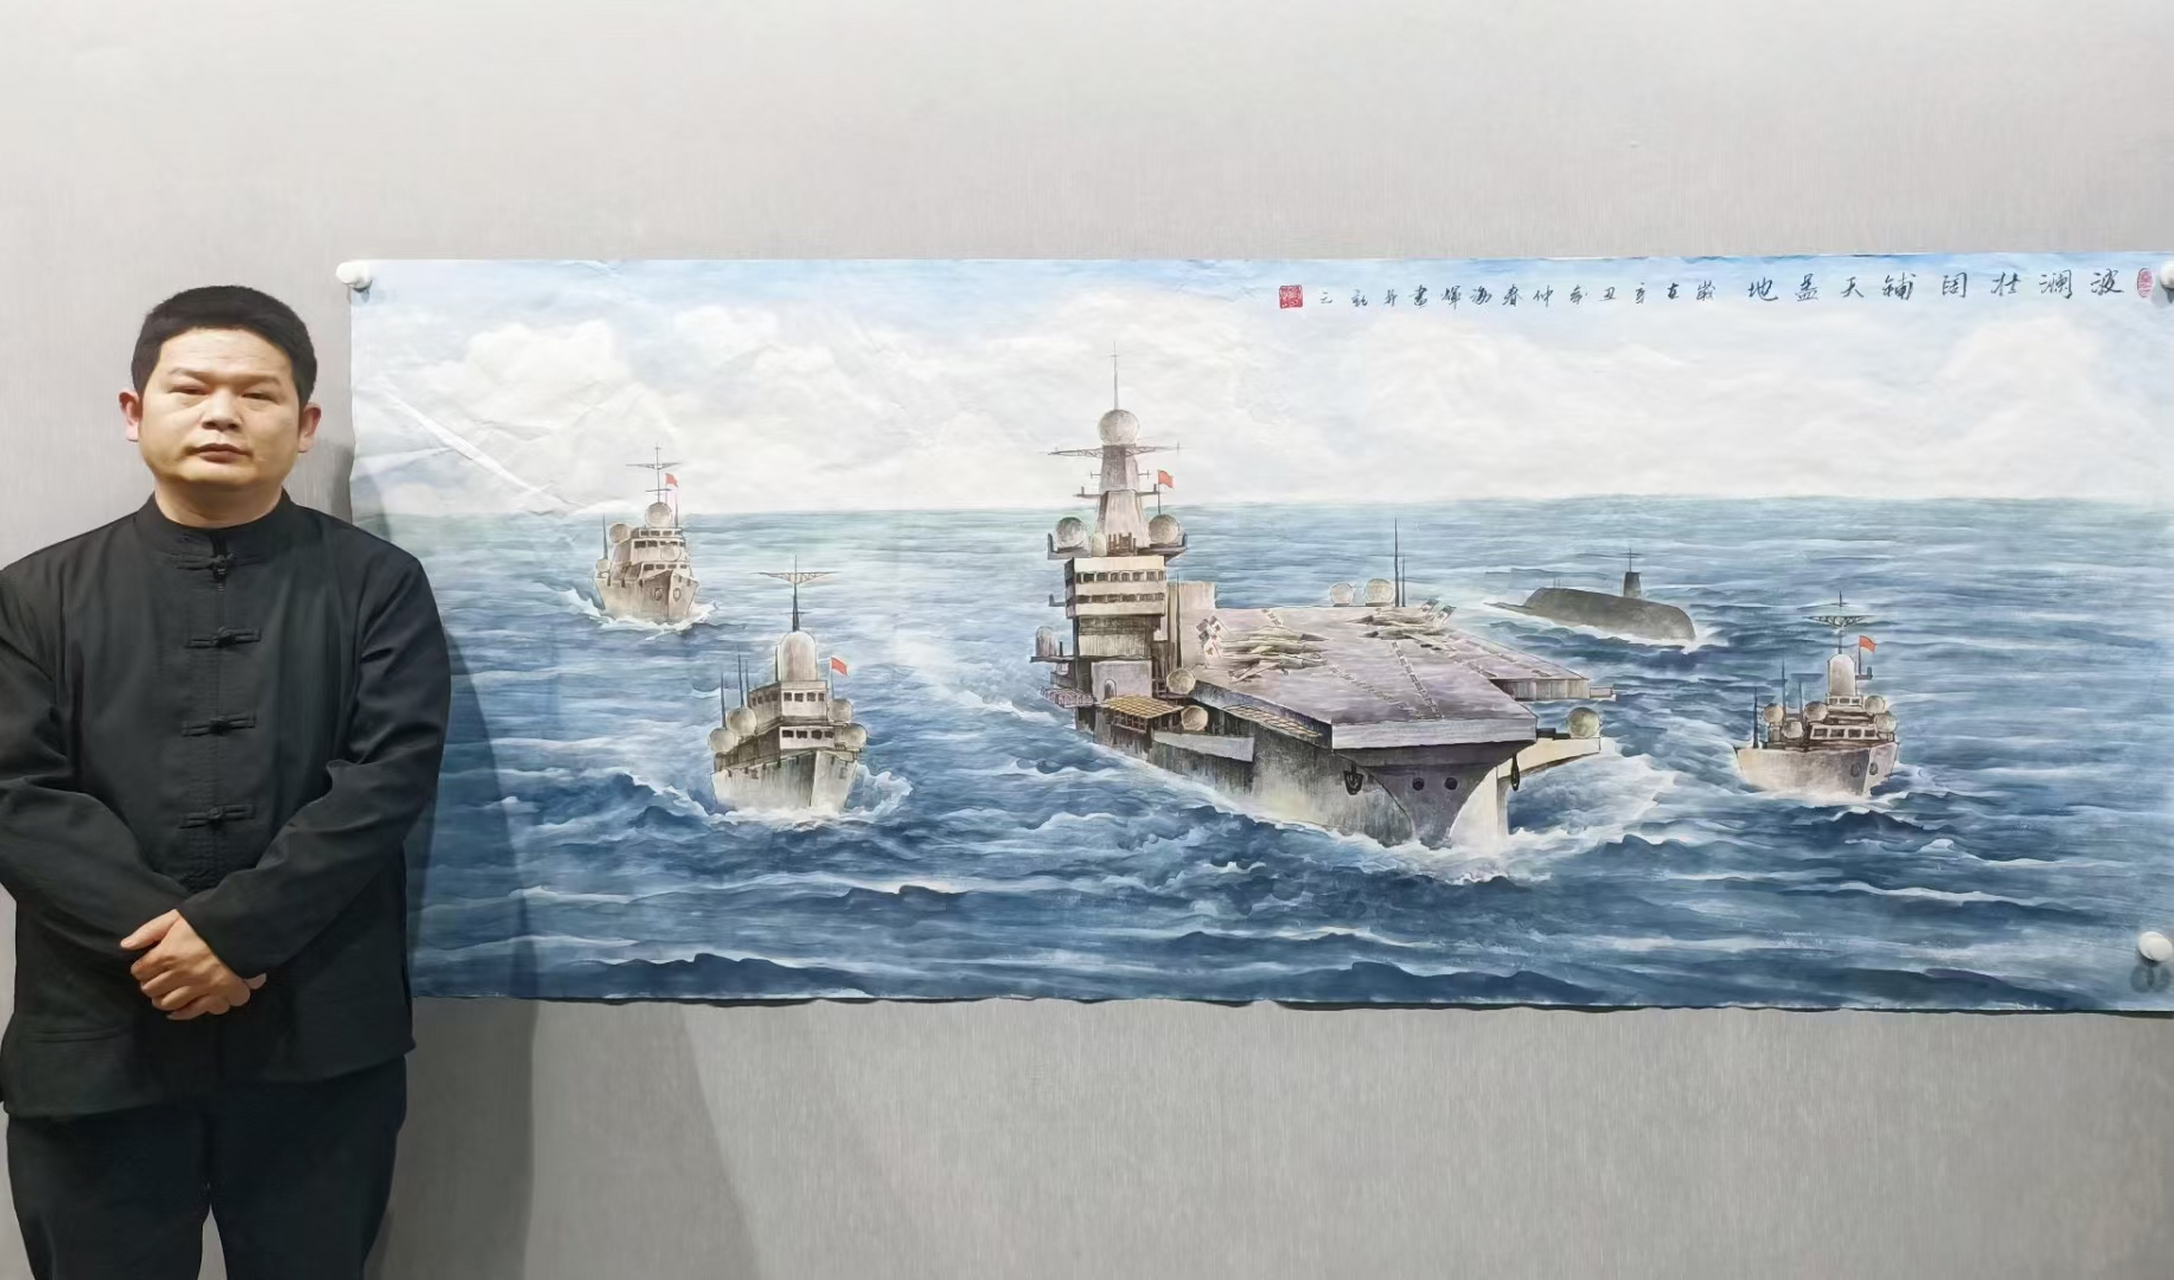 熊海辉用画笔描绘中国军事力量 熊海辉 湖北人士,毕业于湖北襄樊学院